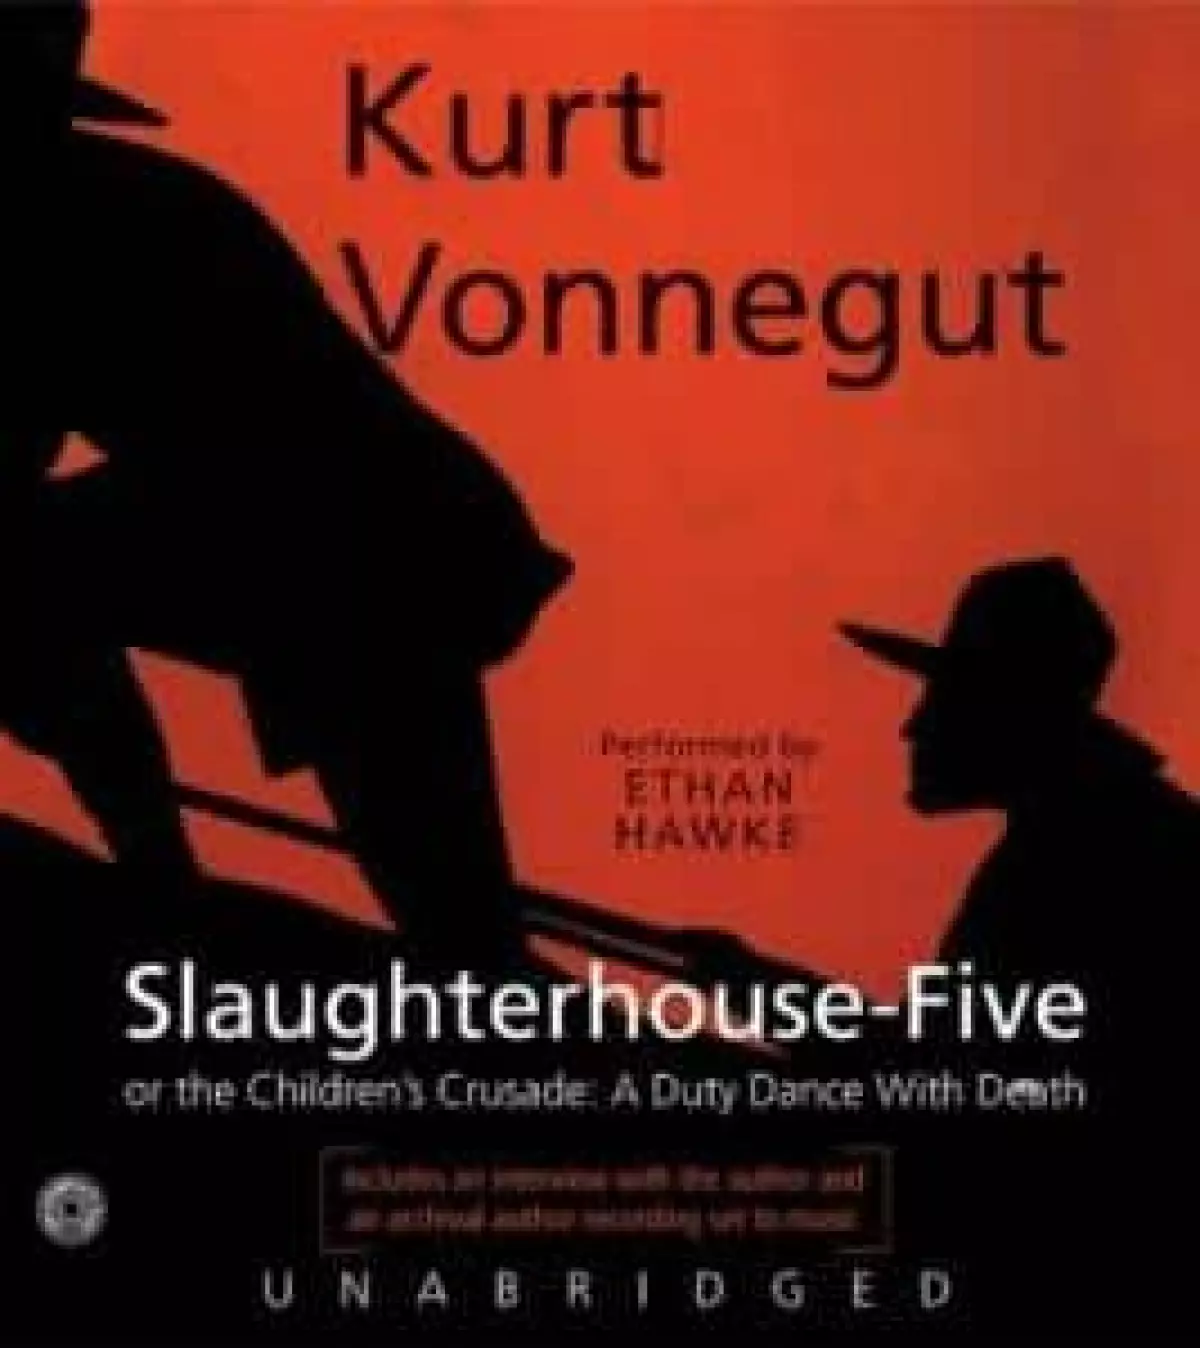 Kurt Vonnegut's Slaughterhouse 5